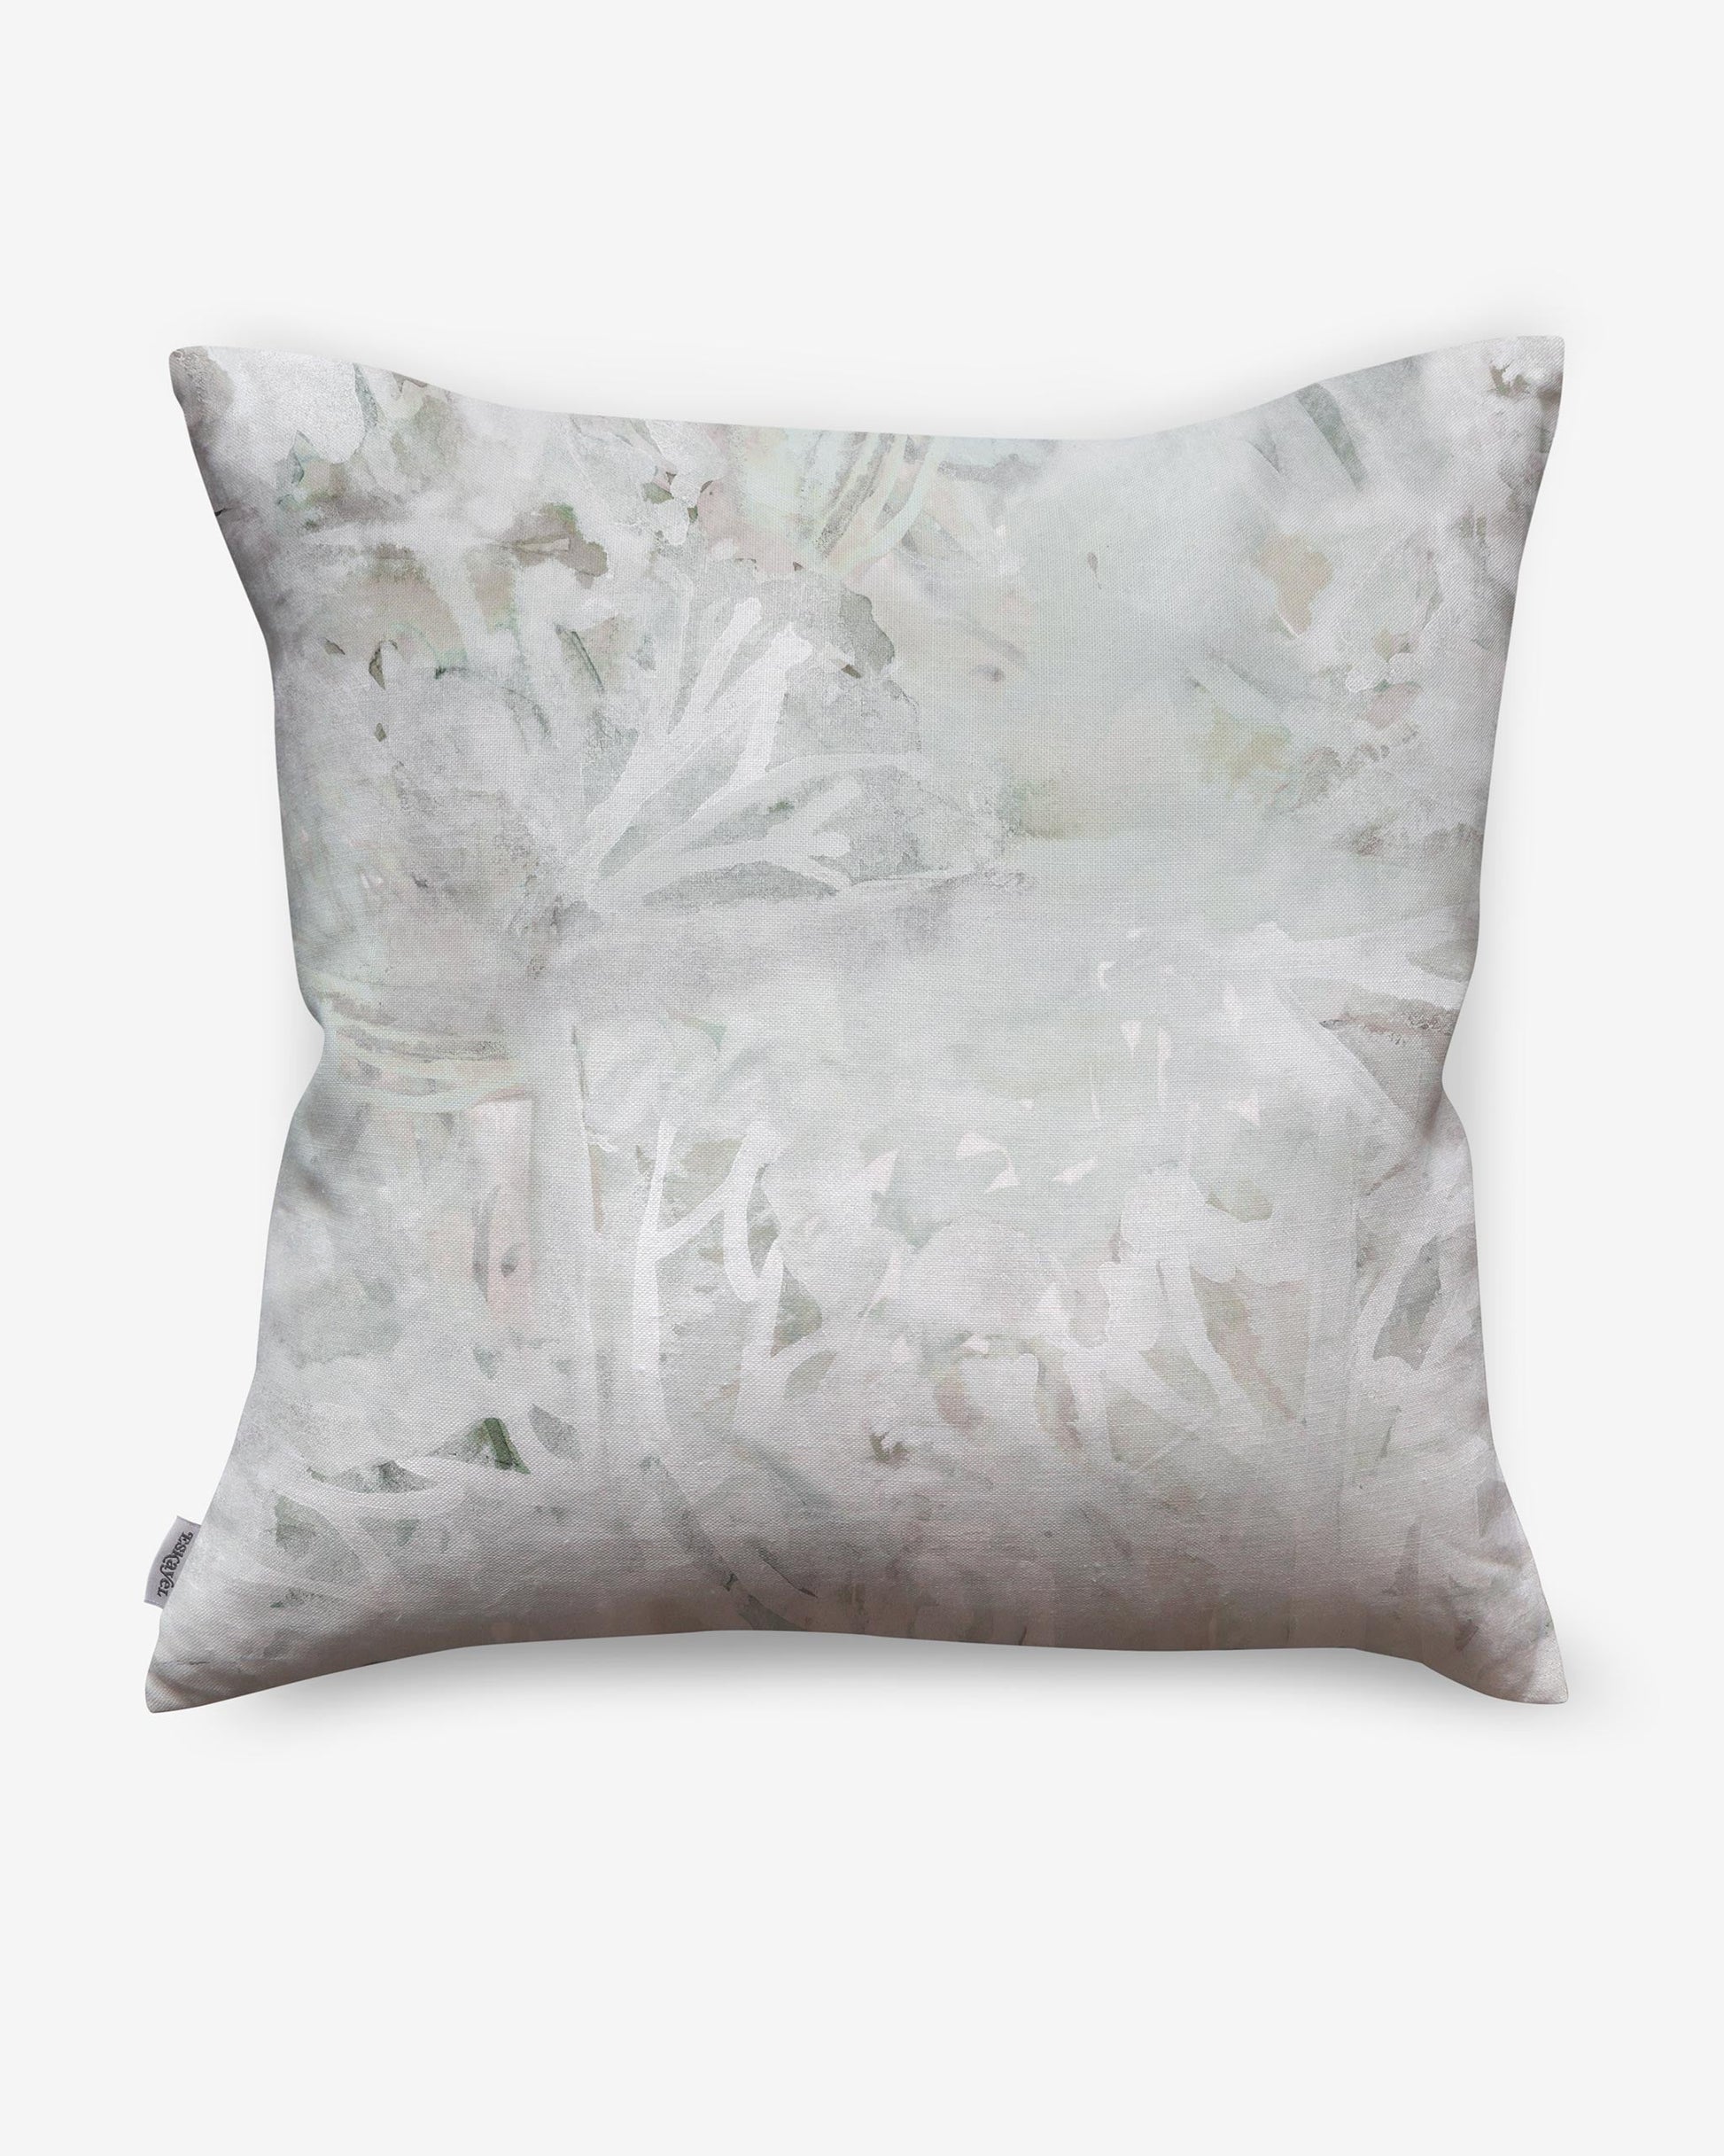 A Cortile Pillow Alba